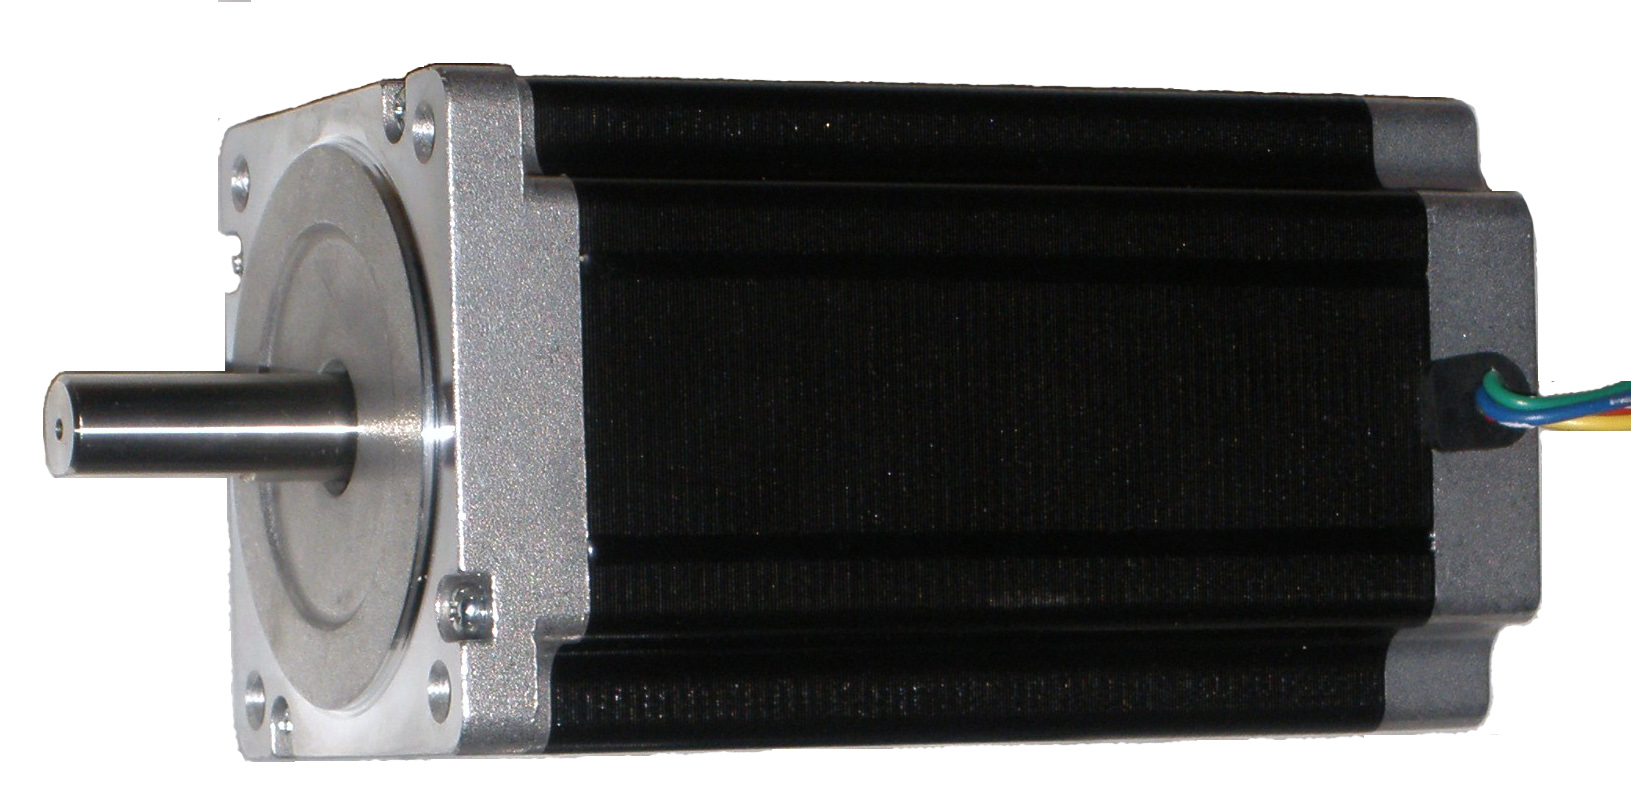 CNC PROFI - Schrittmotor - 4 Nm 4 A - Welle fi.8,0 mm - Flansch 60 mm